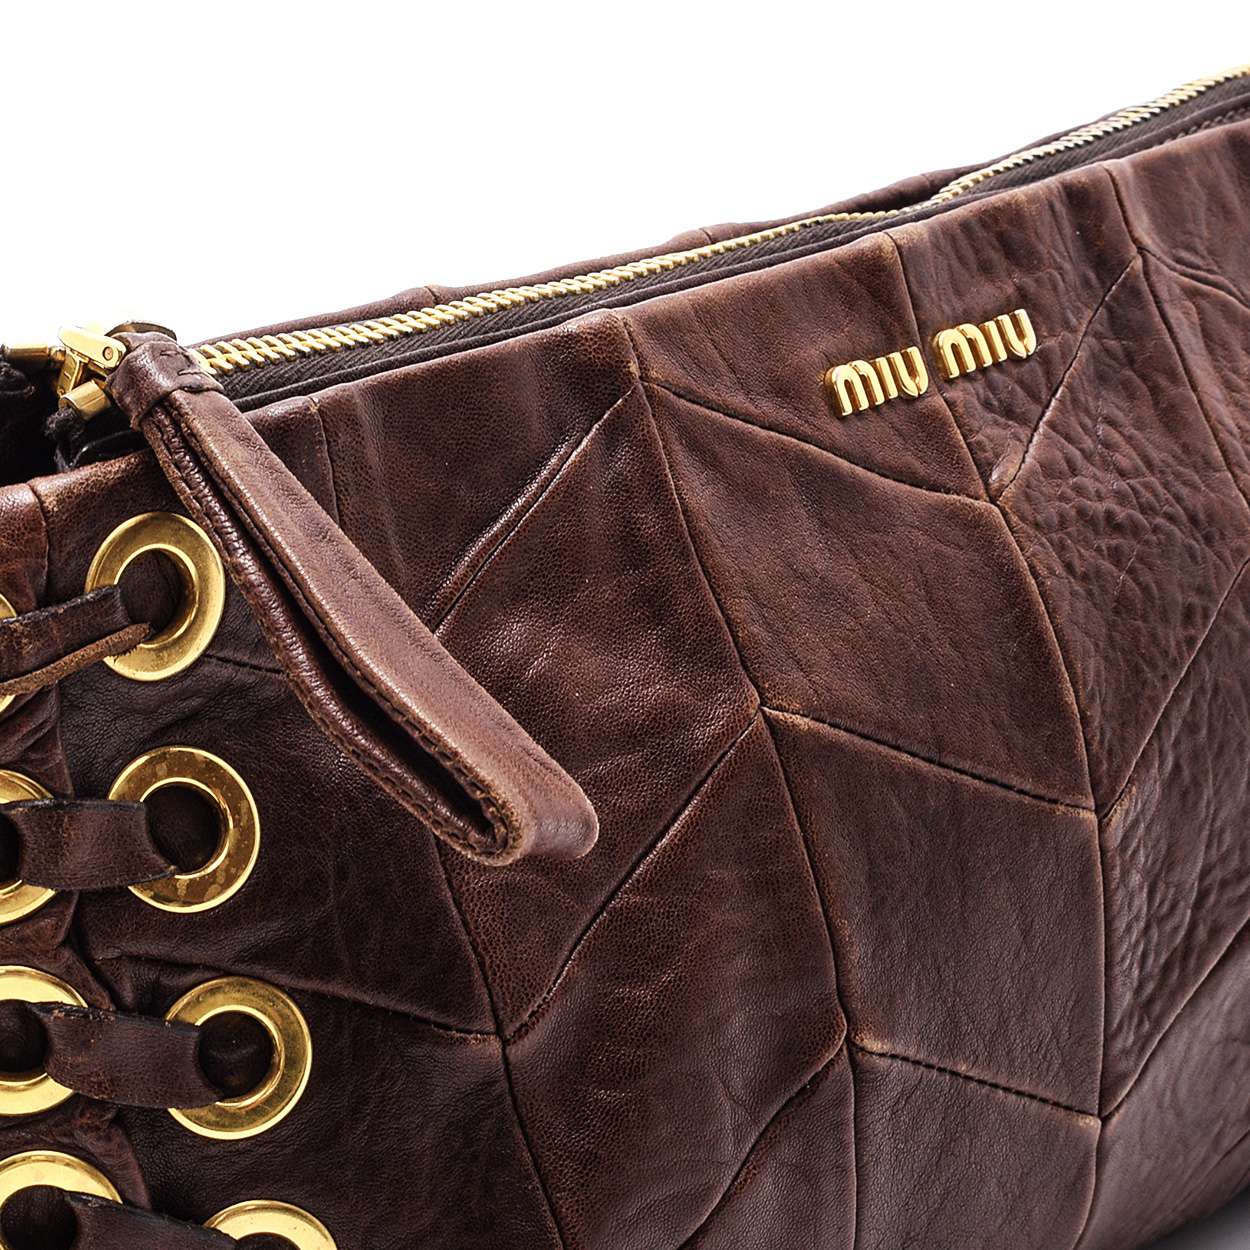 Miu Miu - Brown Leather Clutch 